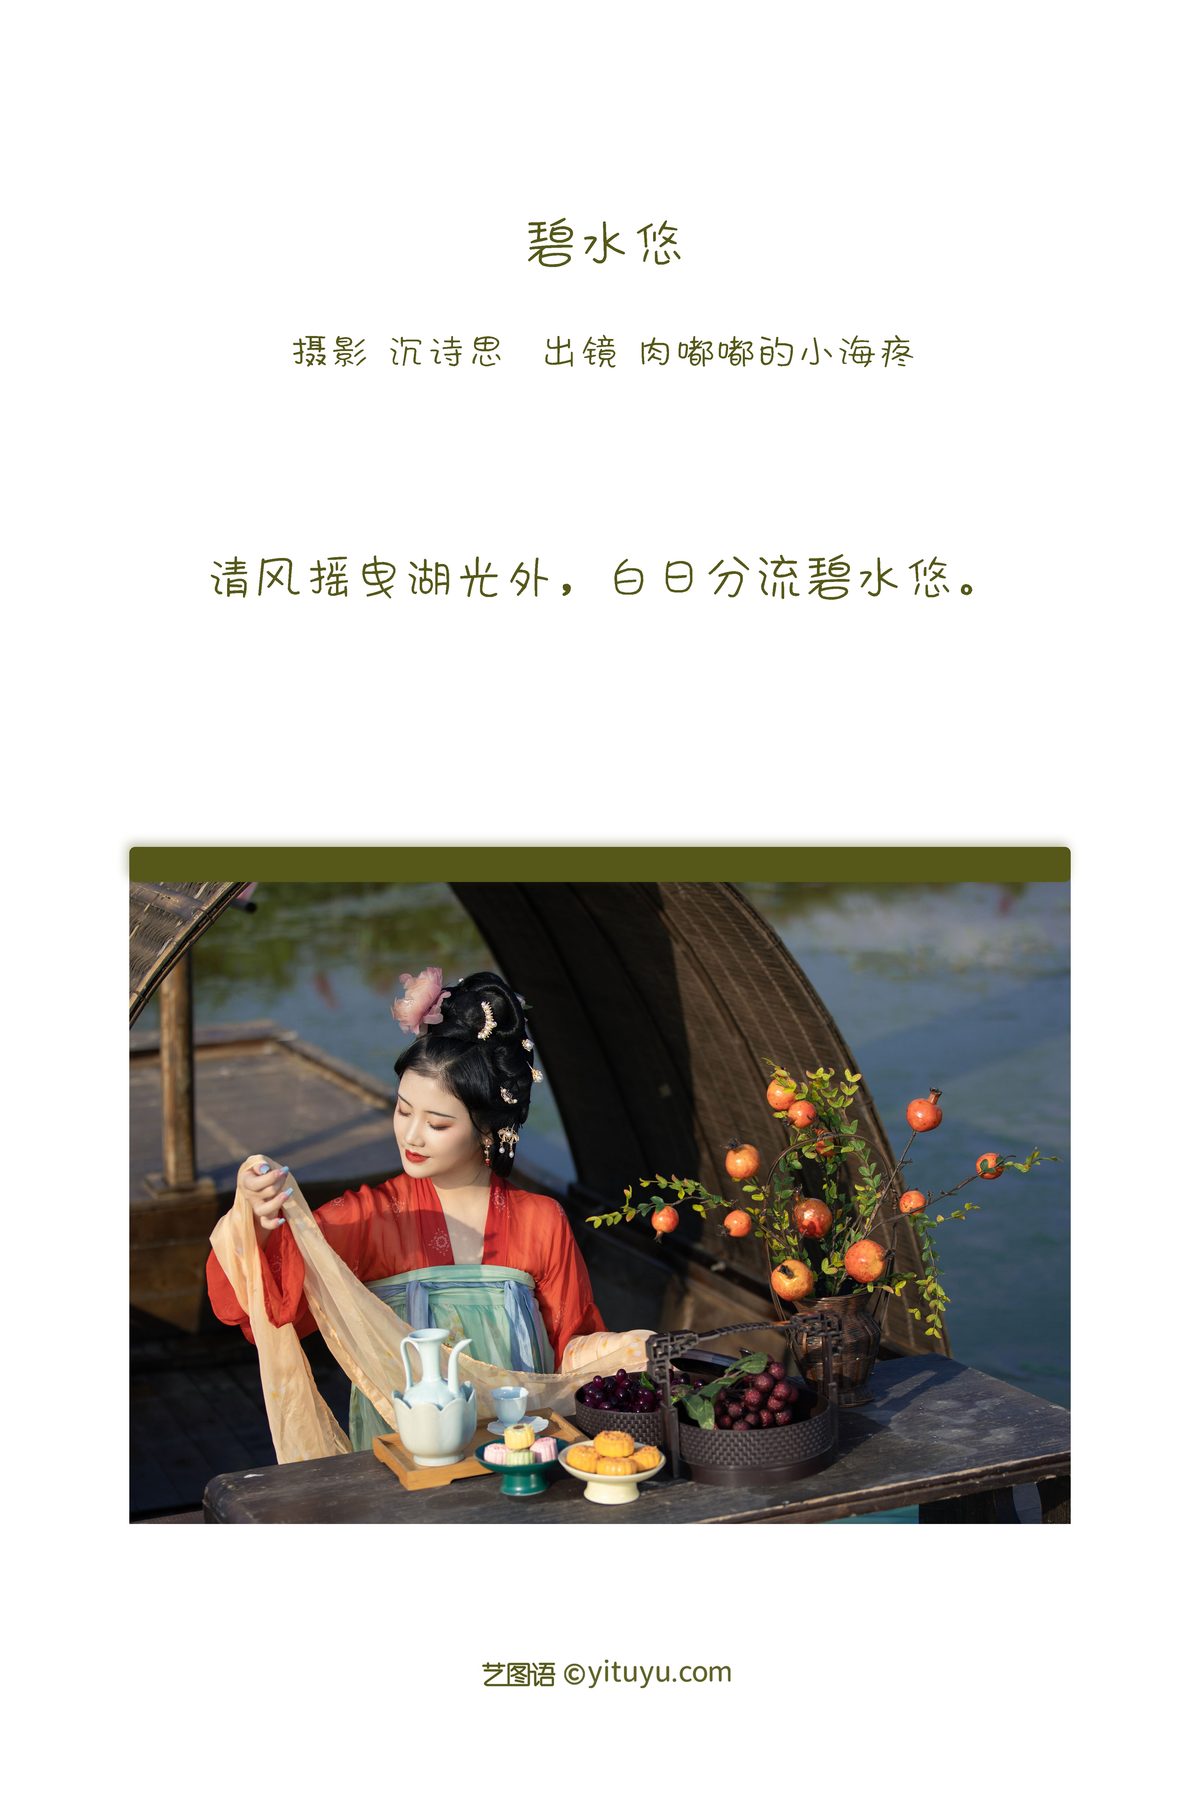 YiTuYu艺图语 Vol 3338 Rou Du Du De Xiao Hai Teng 0001 8124545221.jpg